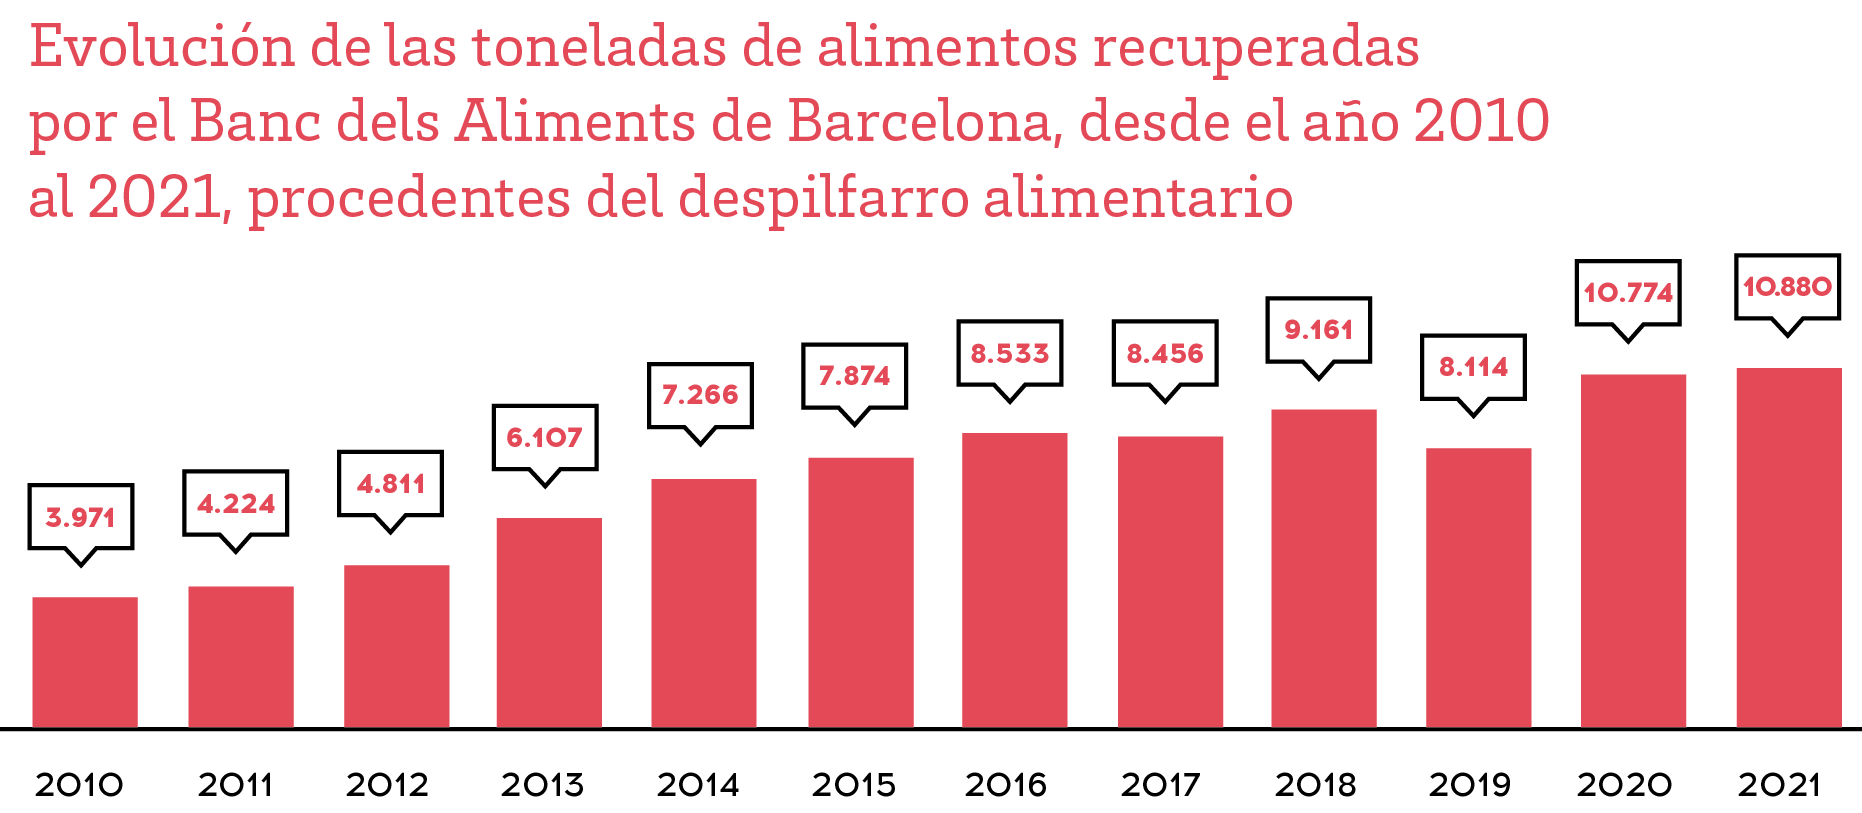 Evolución de las toneladas de alimentos recuperadas por el banco de Alimentos de Barcelona, des del año 2008 al 2018 procedientes del despilfarro